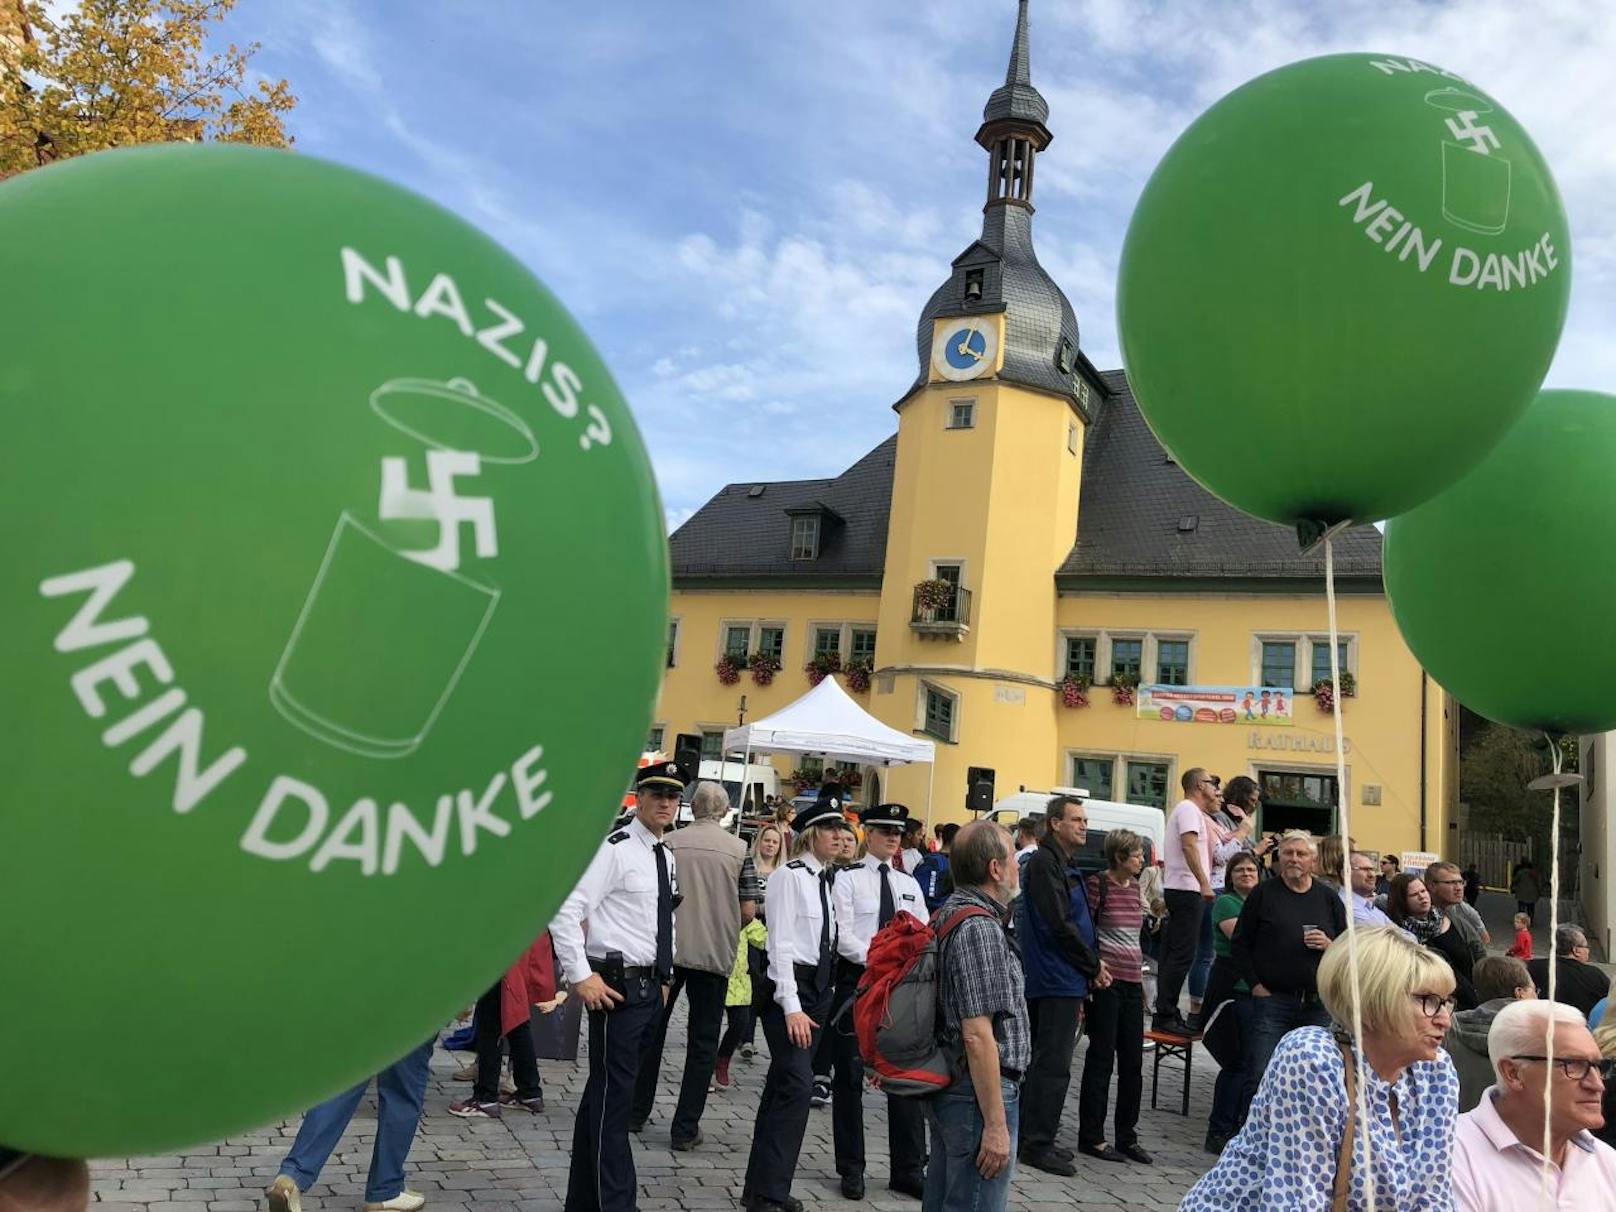 Proteste gegen Rechtsrock-Konzert in Thüringen